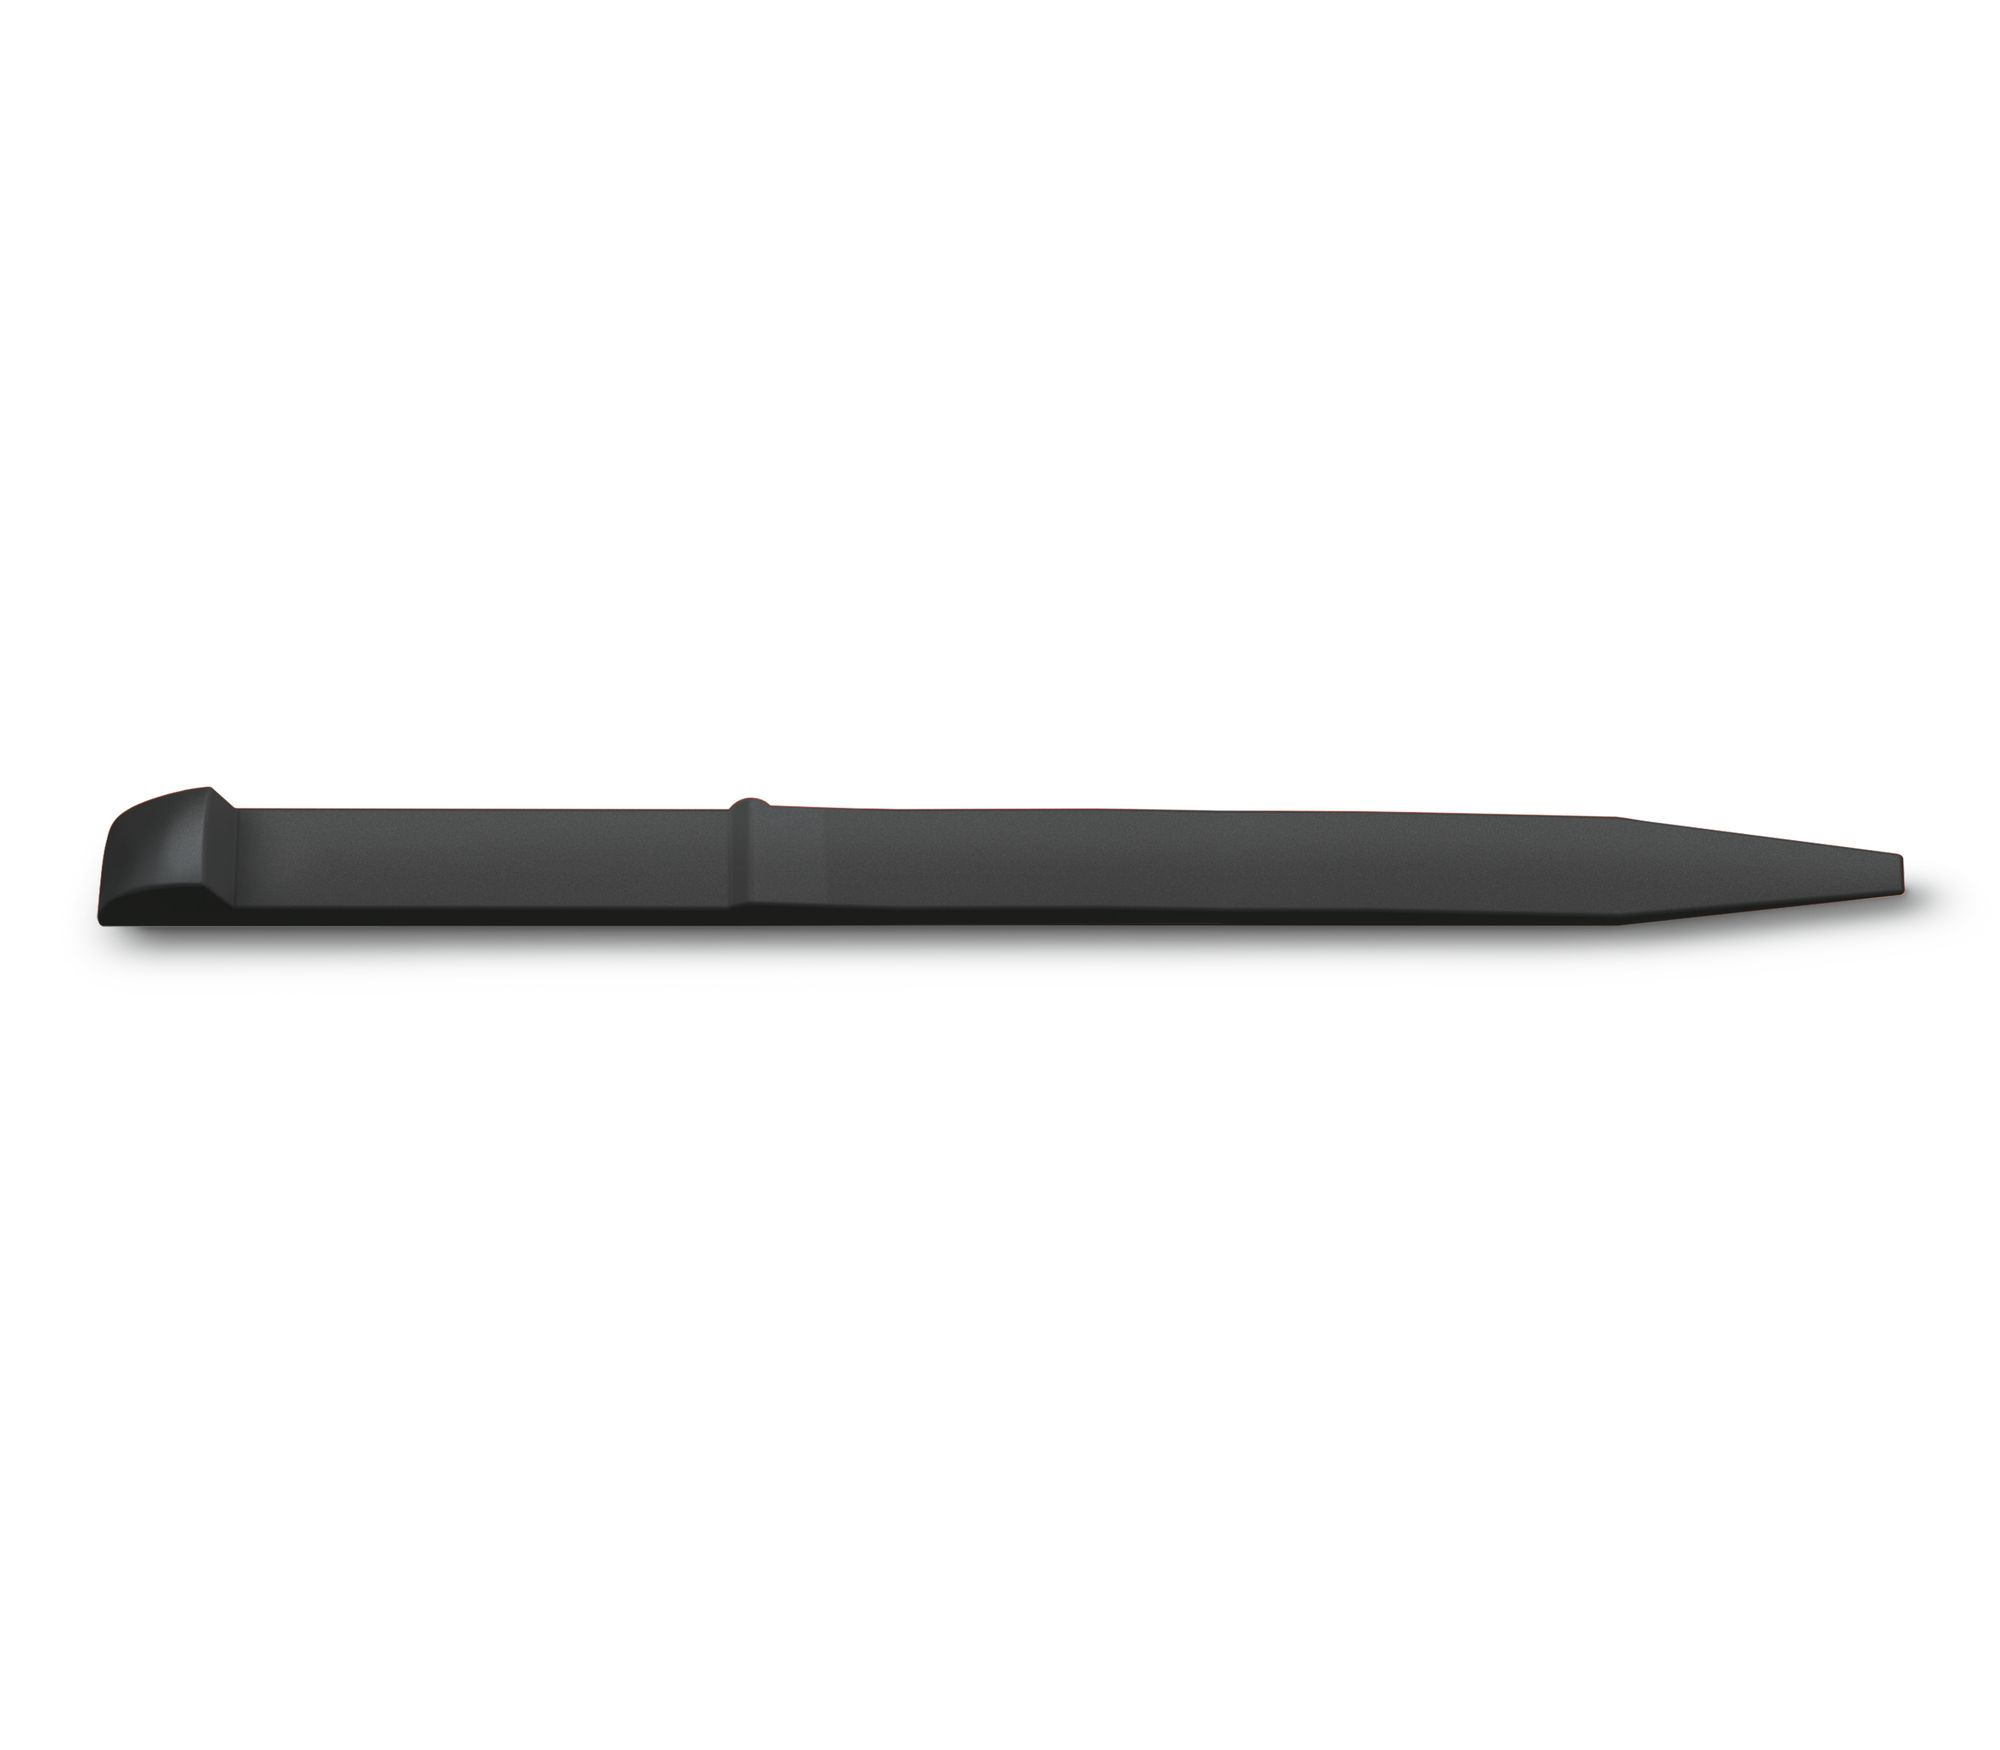 Зубочистка Victorinox чорна 45 мм (для 58-74мм ножів) (A.6141.3)